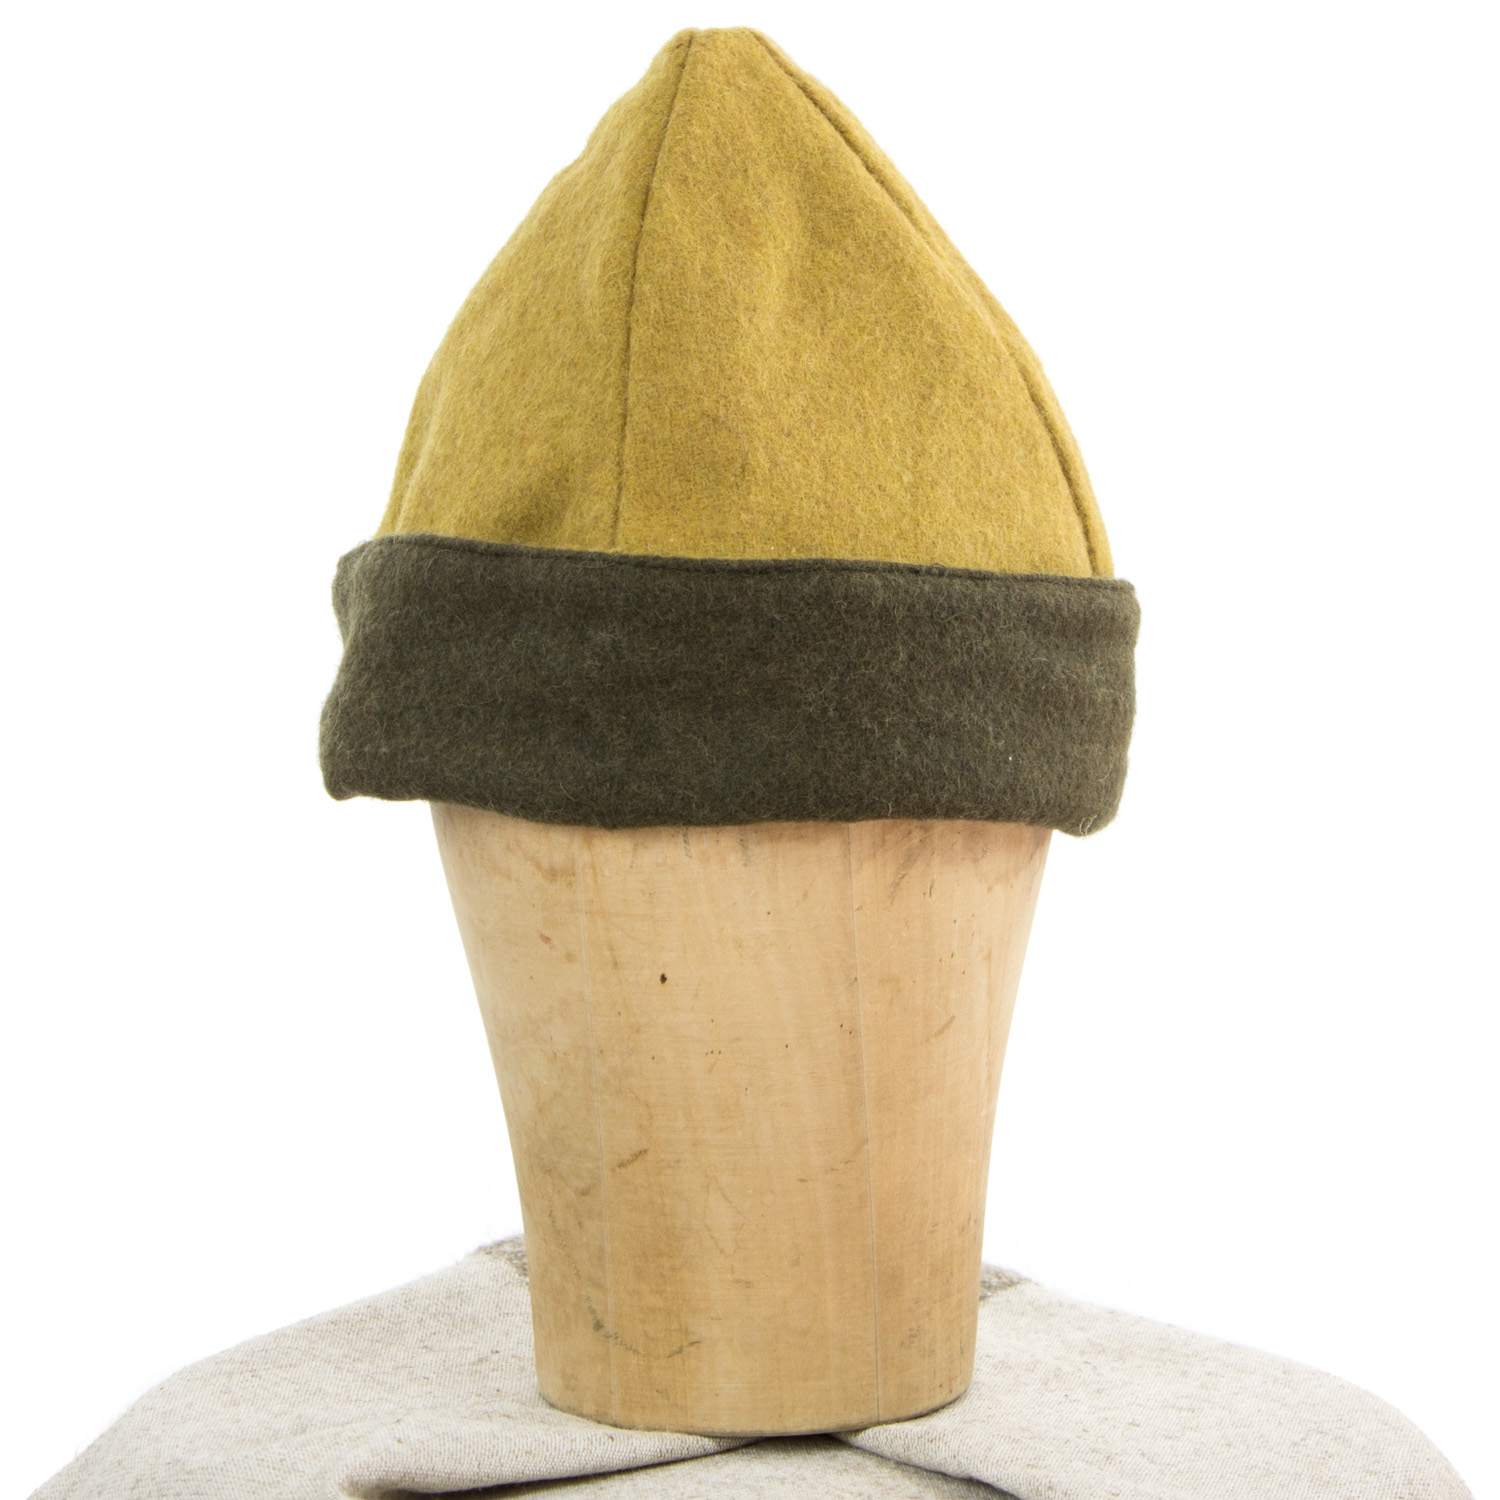 Acorn hat, dark olive green/mustard yellow wool, size L